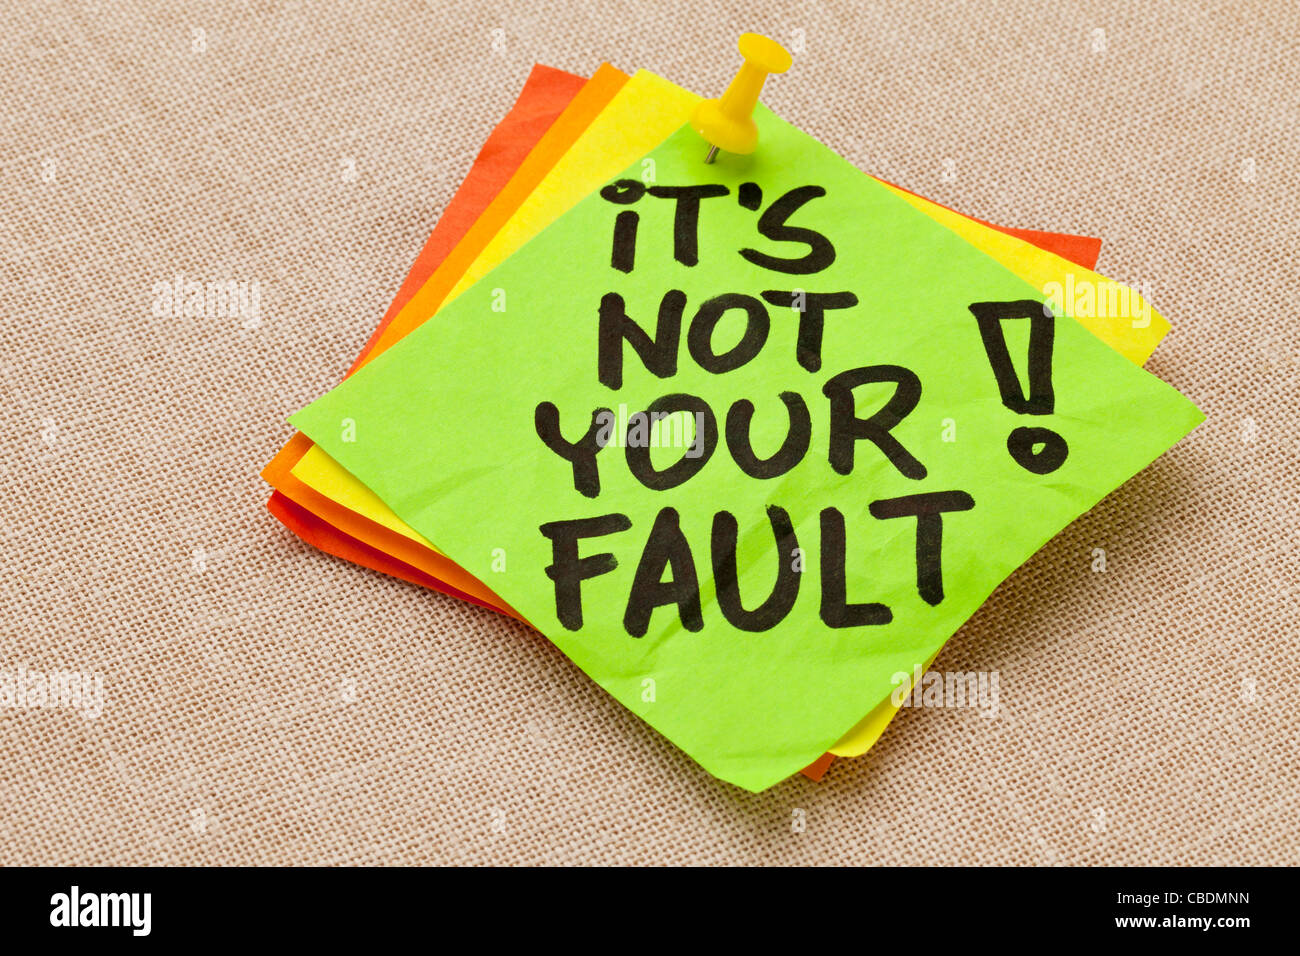 Motivations-Konzept - es ist nicht Ihre Schuld-Ausrufezeichen - Handschrift auf einem grünen Zettel gegen Leinwand Board Stockfoto